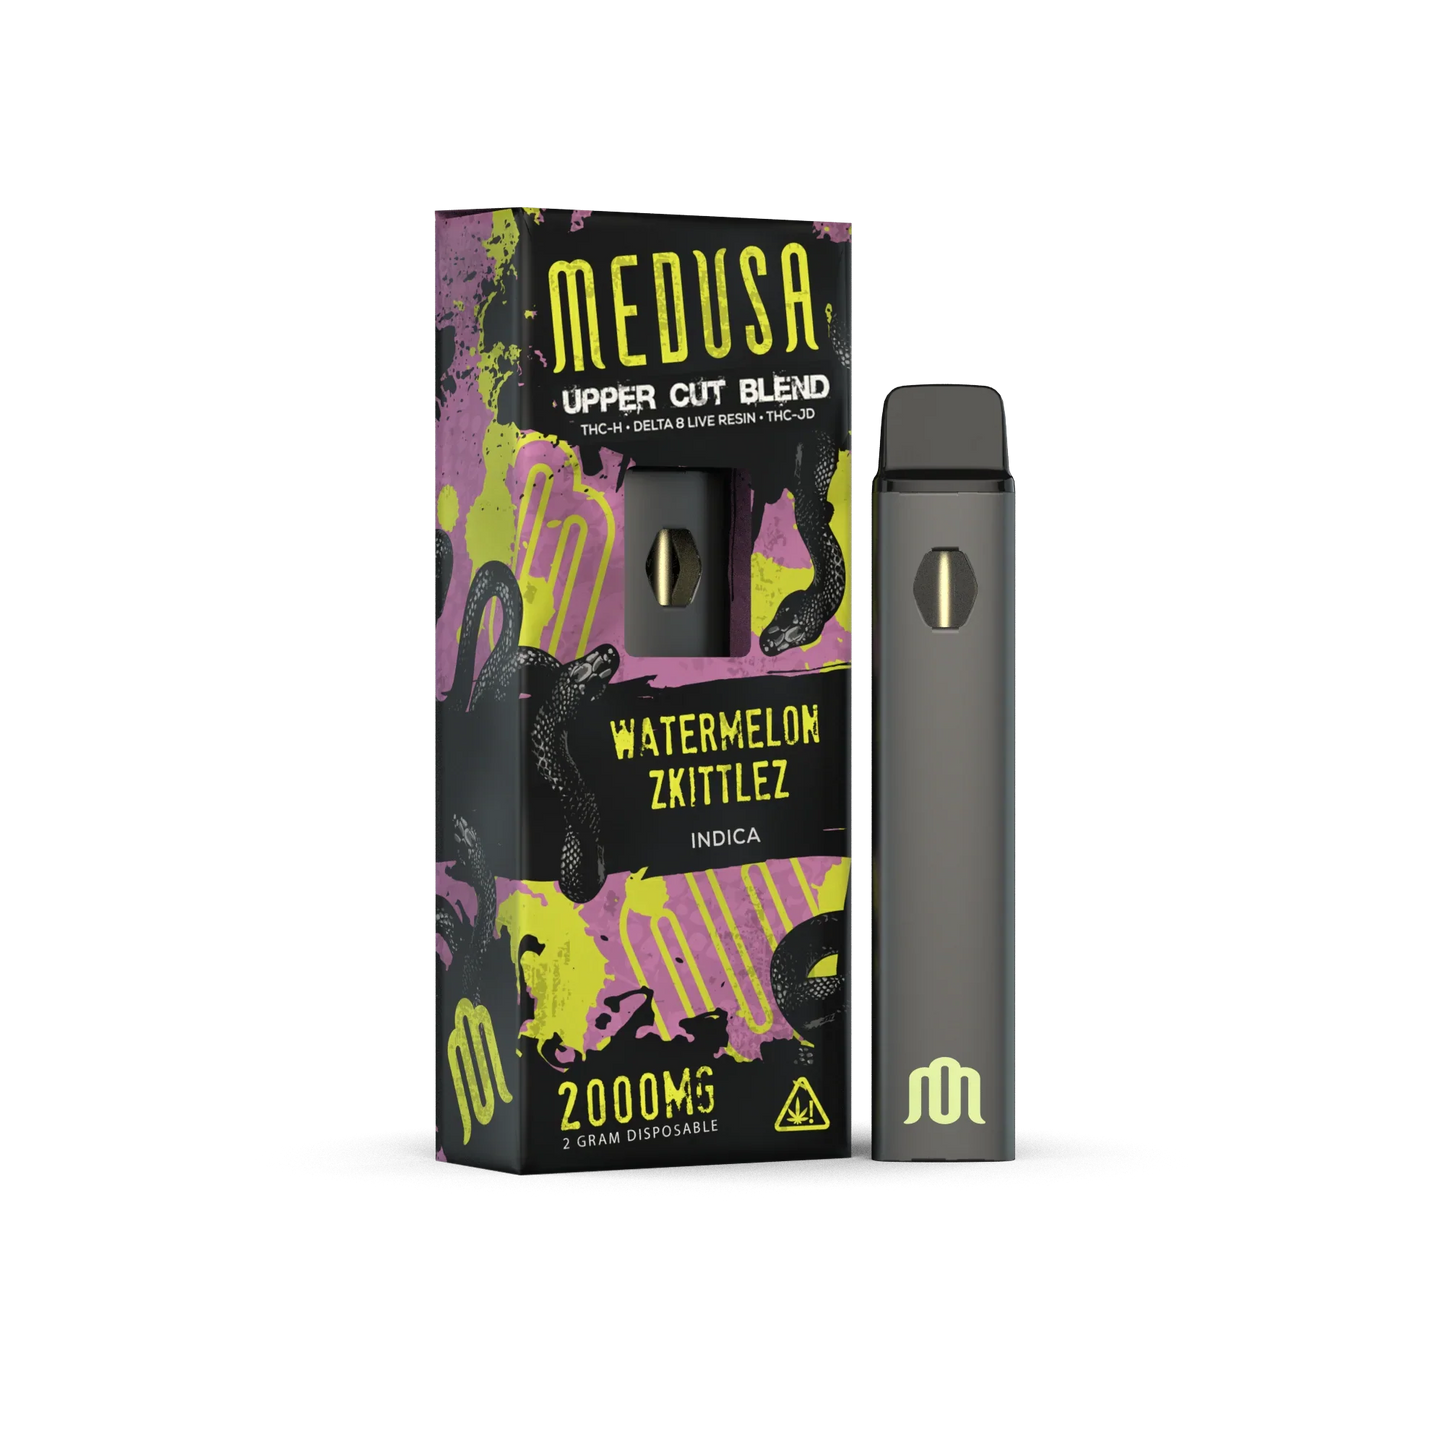 Medusa Upper Cut Blend 2G Disposable